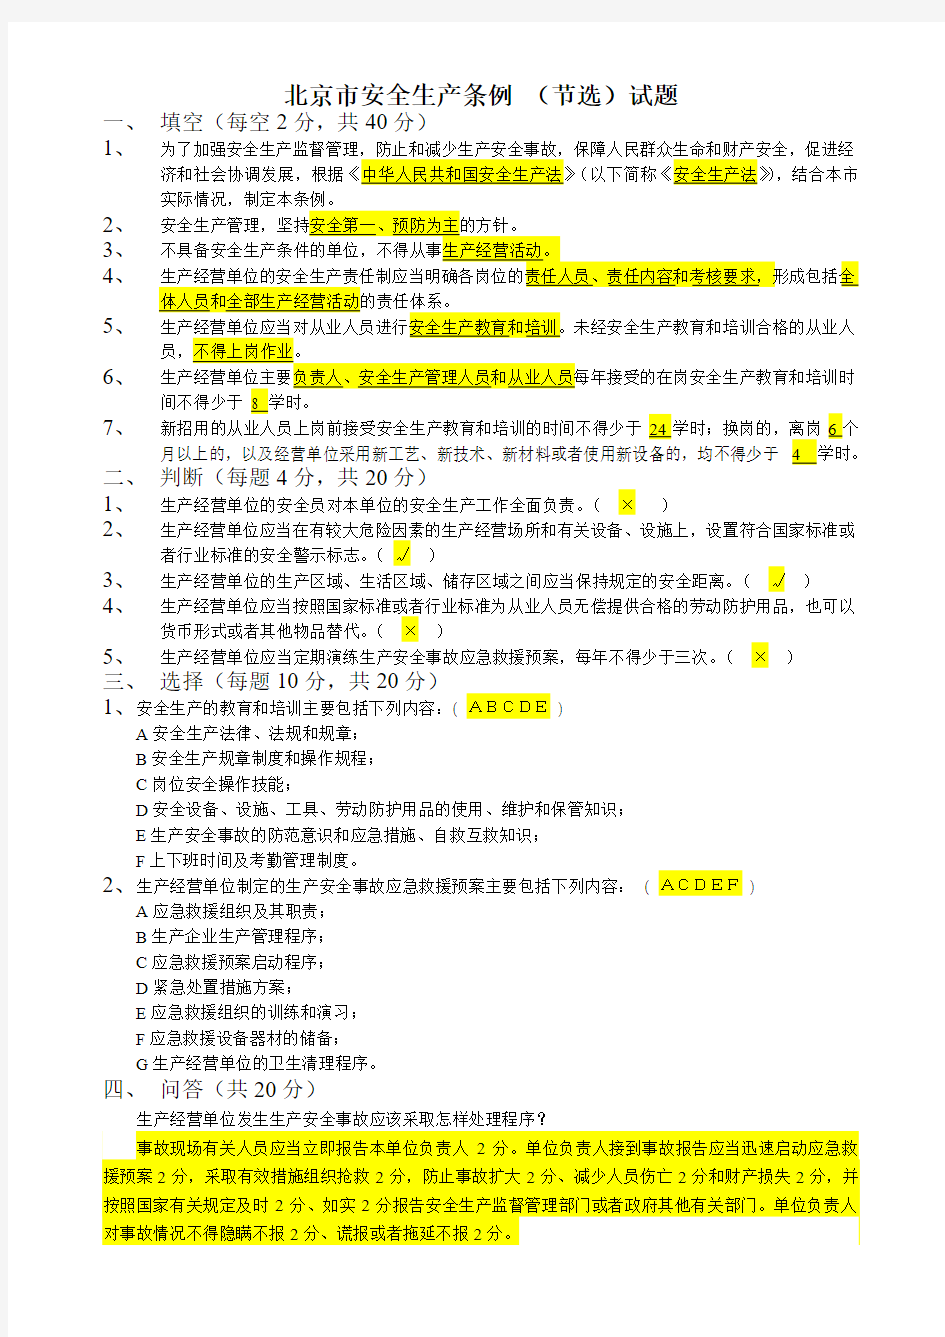 北京市安全生产条例(节选)试题答案